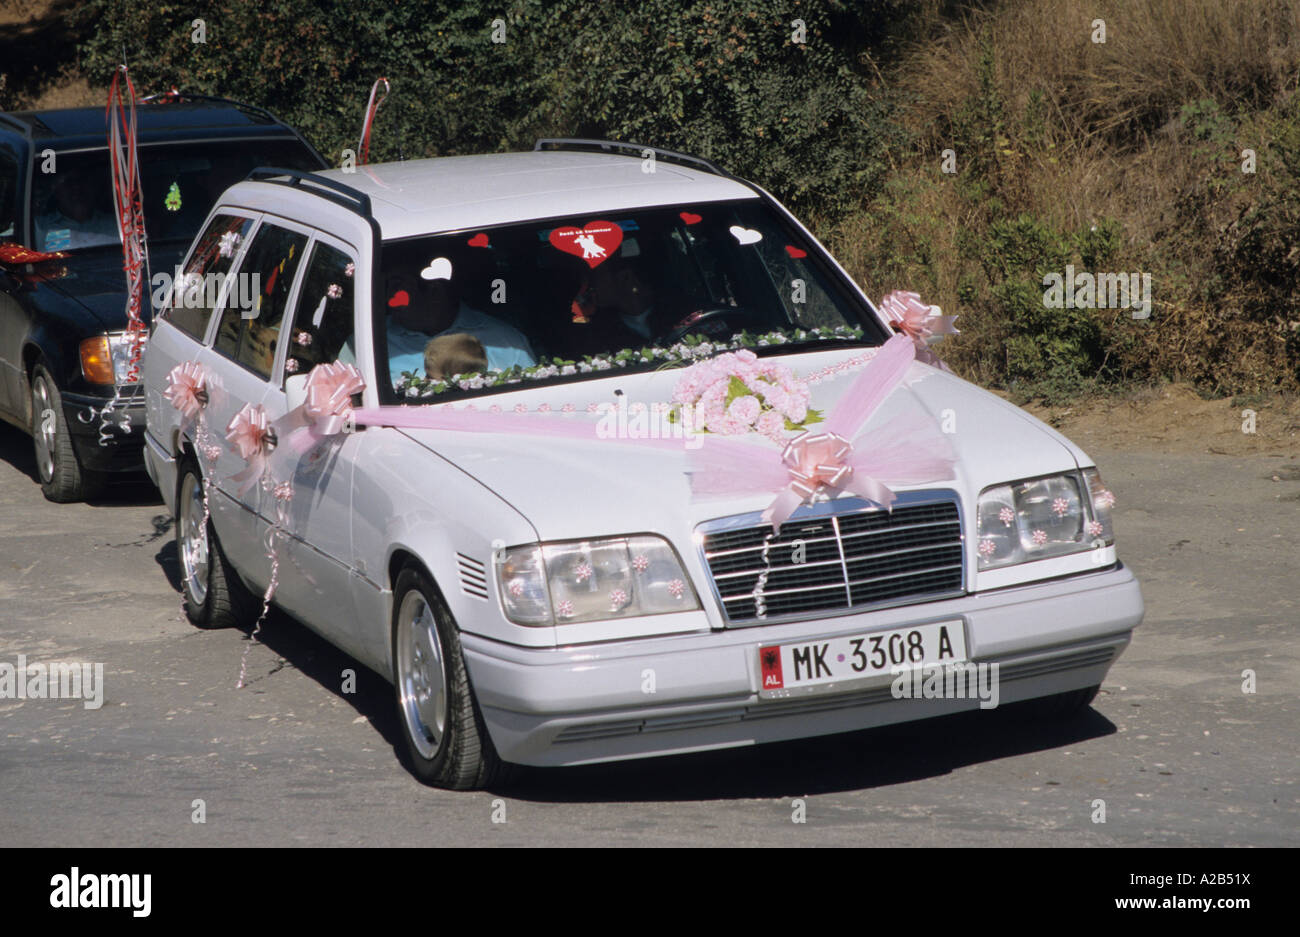 Festa di nozze in Mercedes nei pressi di Durazzo in Albania Foto stock -  Alamy